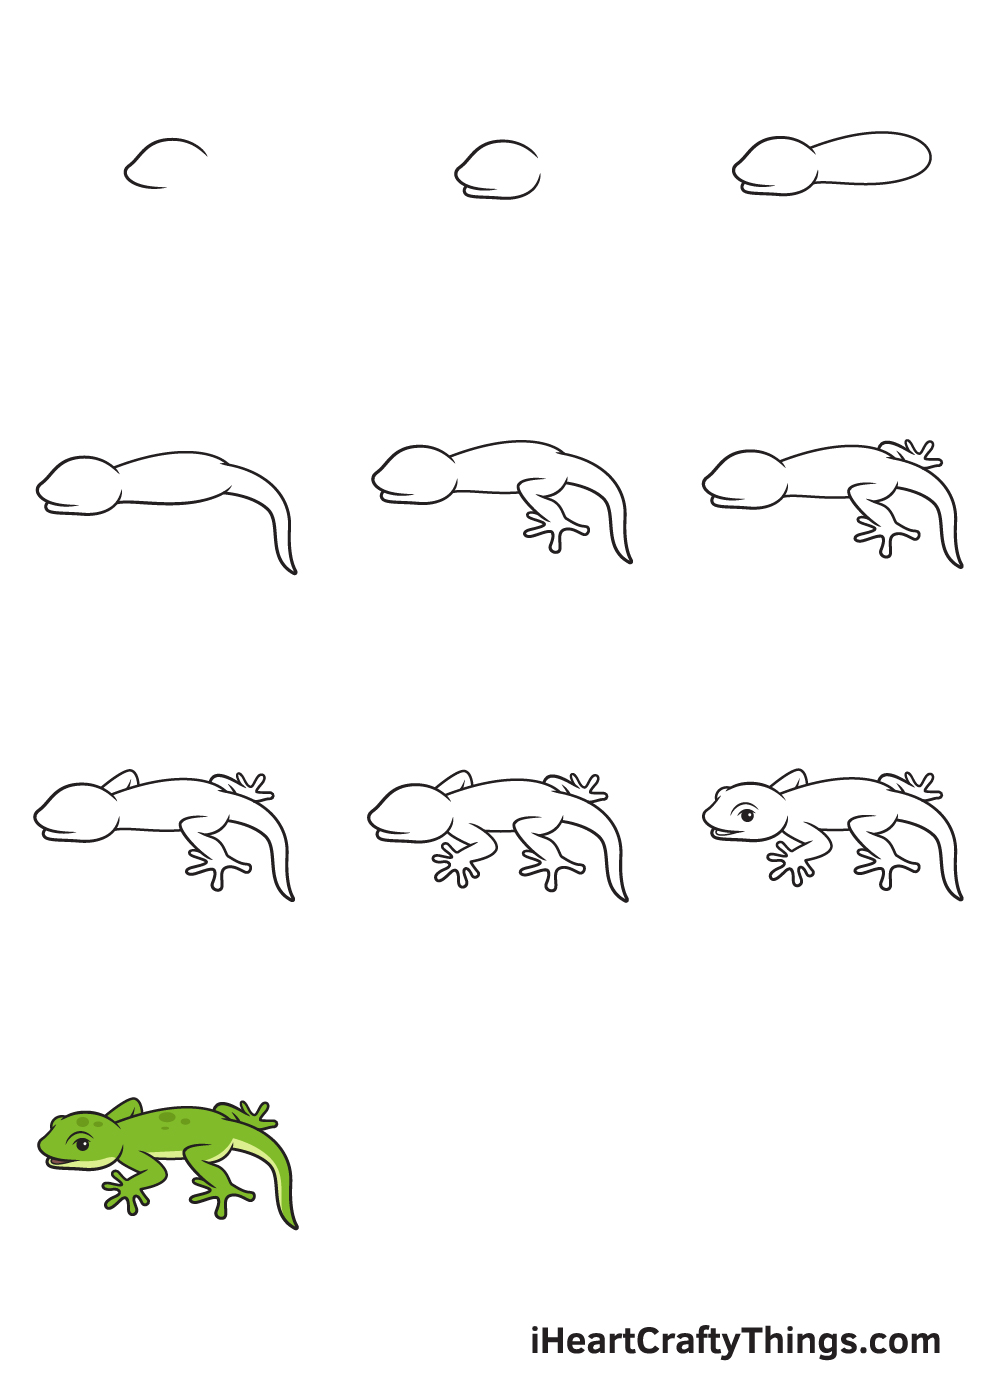 Drawing Lizard in 10 Easy Steps - Hướng dẫn cách vẽ con thằn lằn đơn giản với 9 bước cơ bản